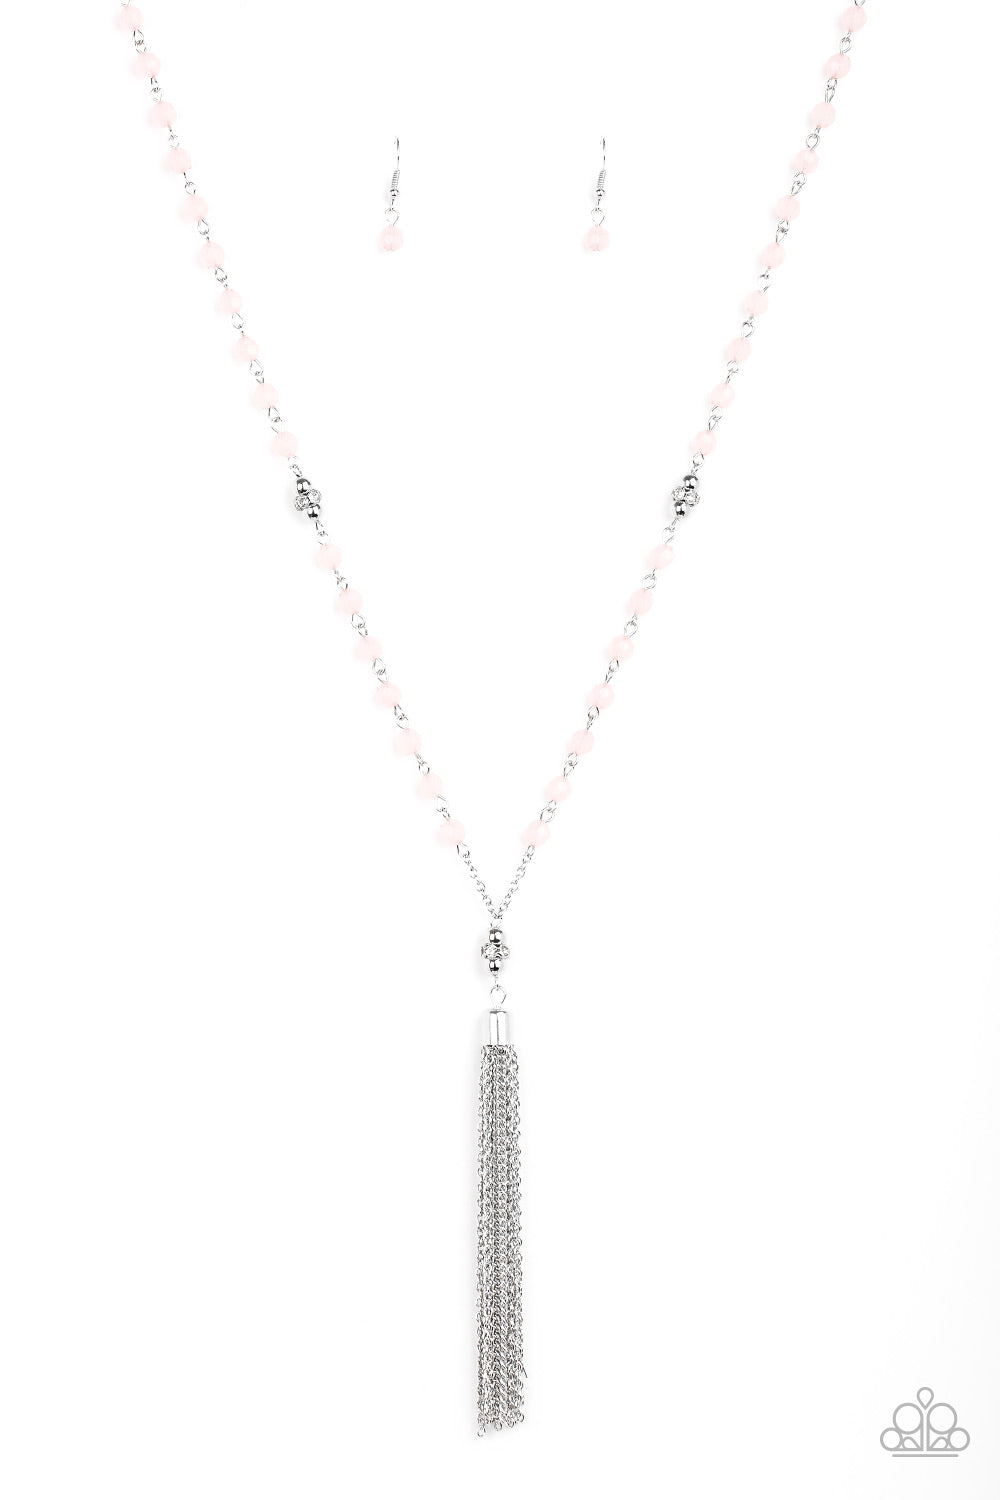 Tassel Takeover Pink
Necklace - Daria's Blings N Things